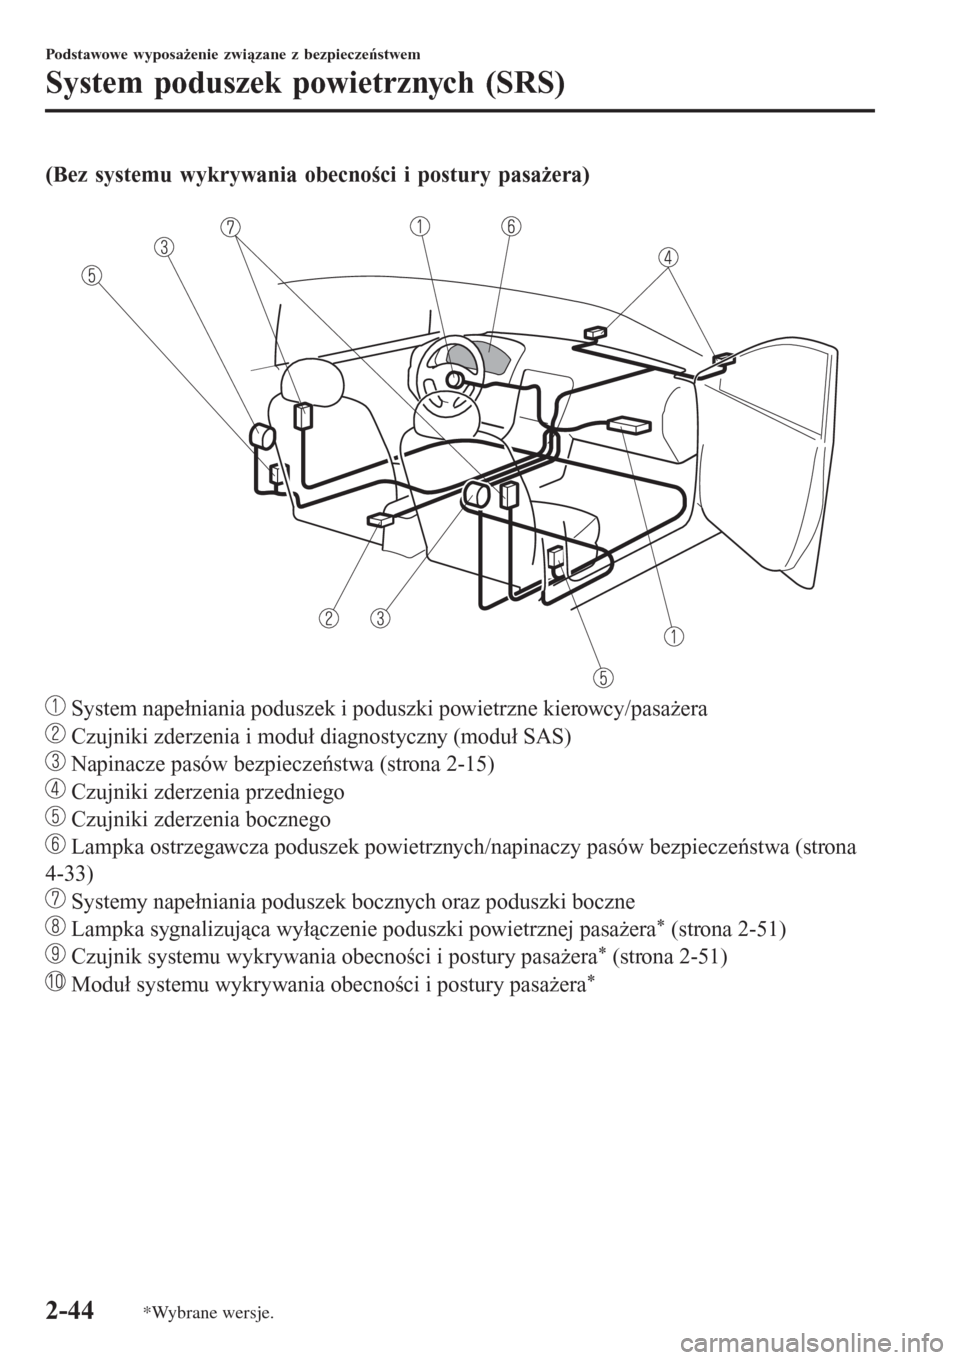 MAZDA MODEL MX-5 2015  Instrukcja Obsługi (in Polish) (Bez systemu wykrywania obecności i postury pasażera)
 
 System napełniania poduszek i poduszki powietrzne kierowcy/pasażera
 Czujniki zderzenia i moduł diagnostyczny (moduł SAS)
 Napinacze pas�